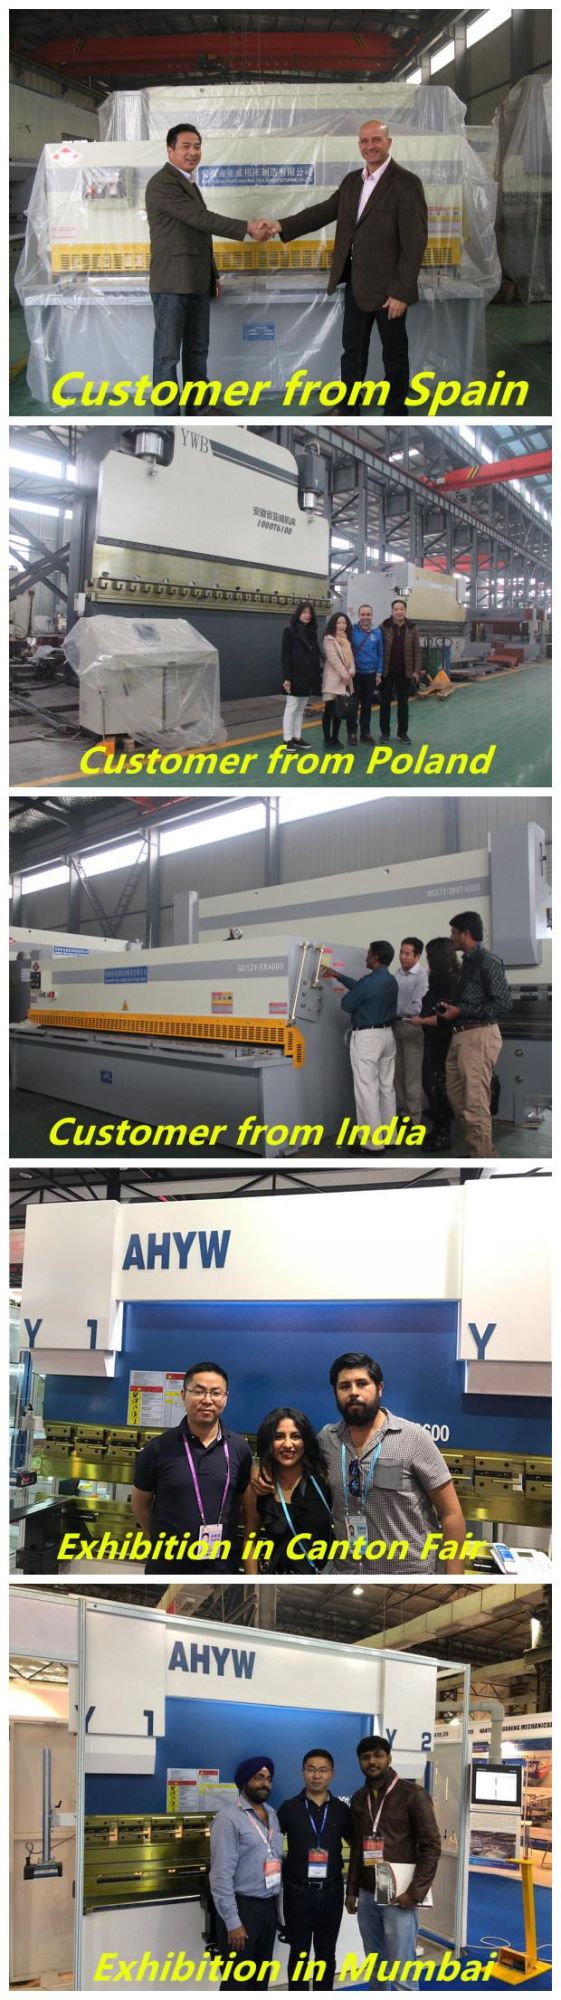 Hydraulic Press Machine for Sheet Metal Bending From Bowang Maanshan Anhui China